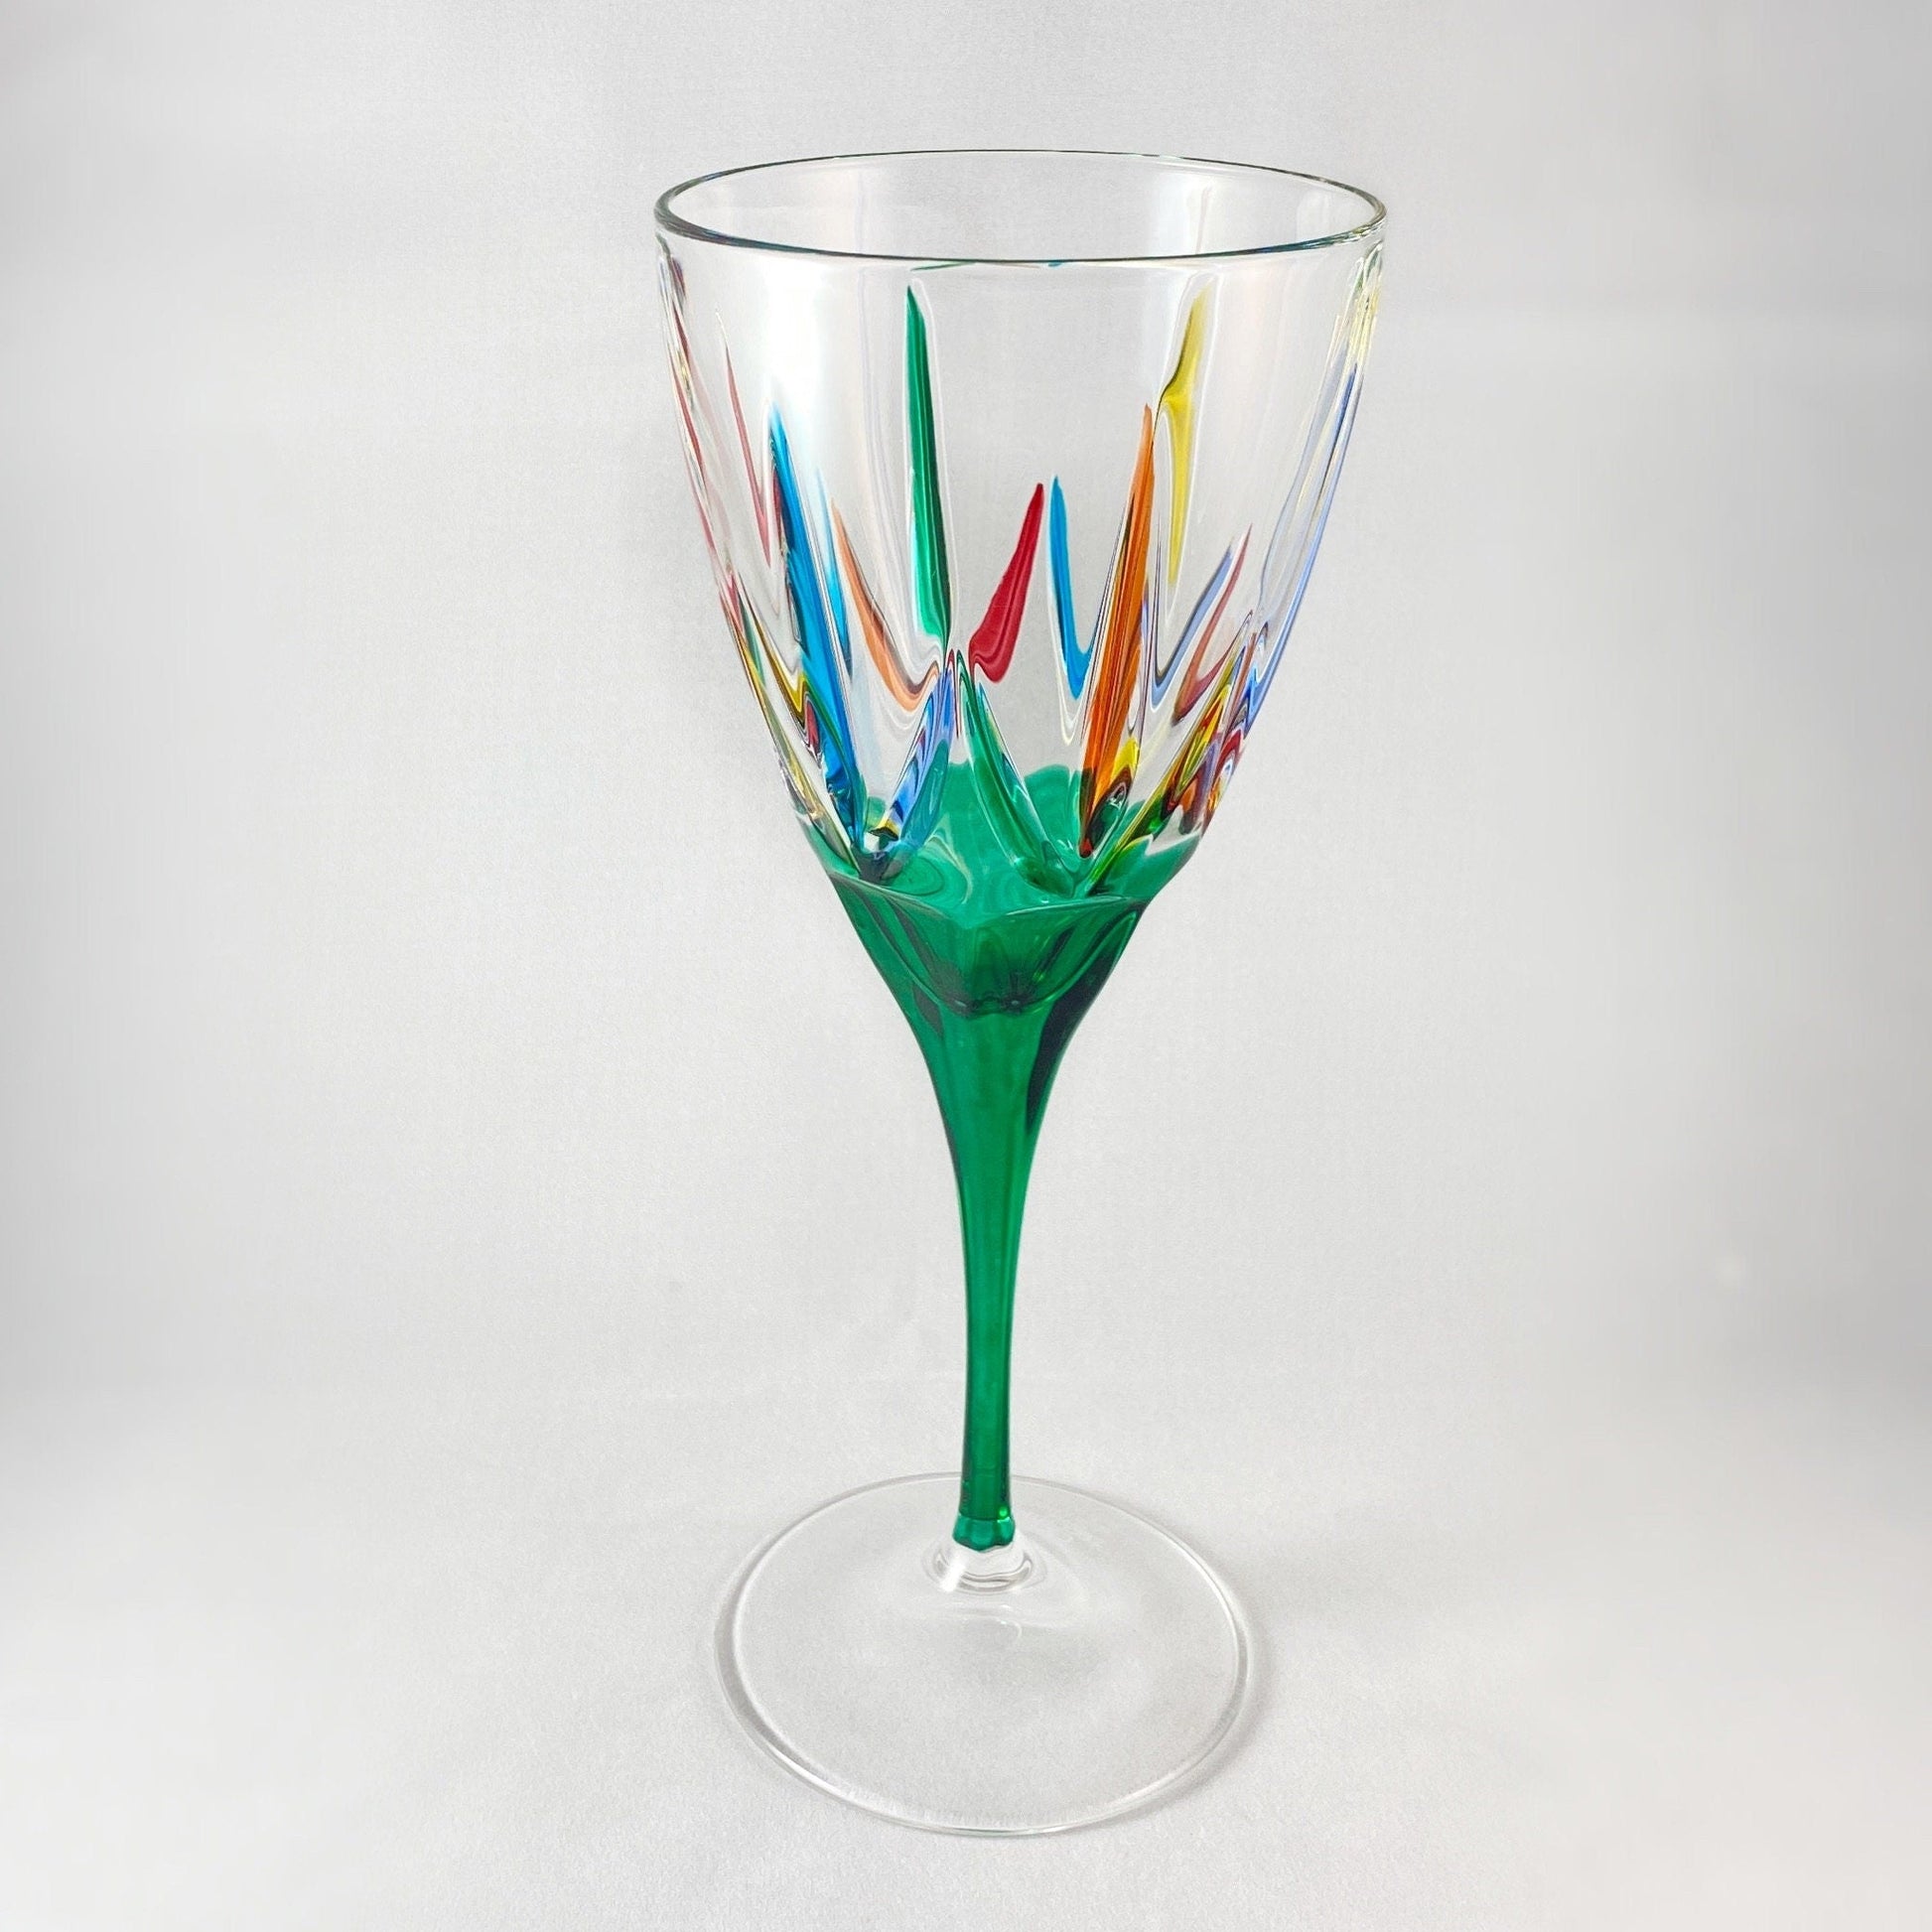 Green Stem Chic Venetian Wine Glass - Handmade in Italy, Colorful Murano Glass